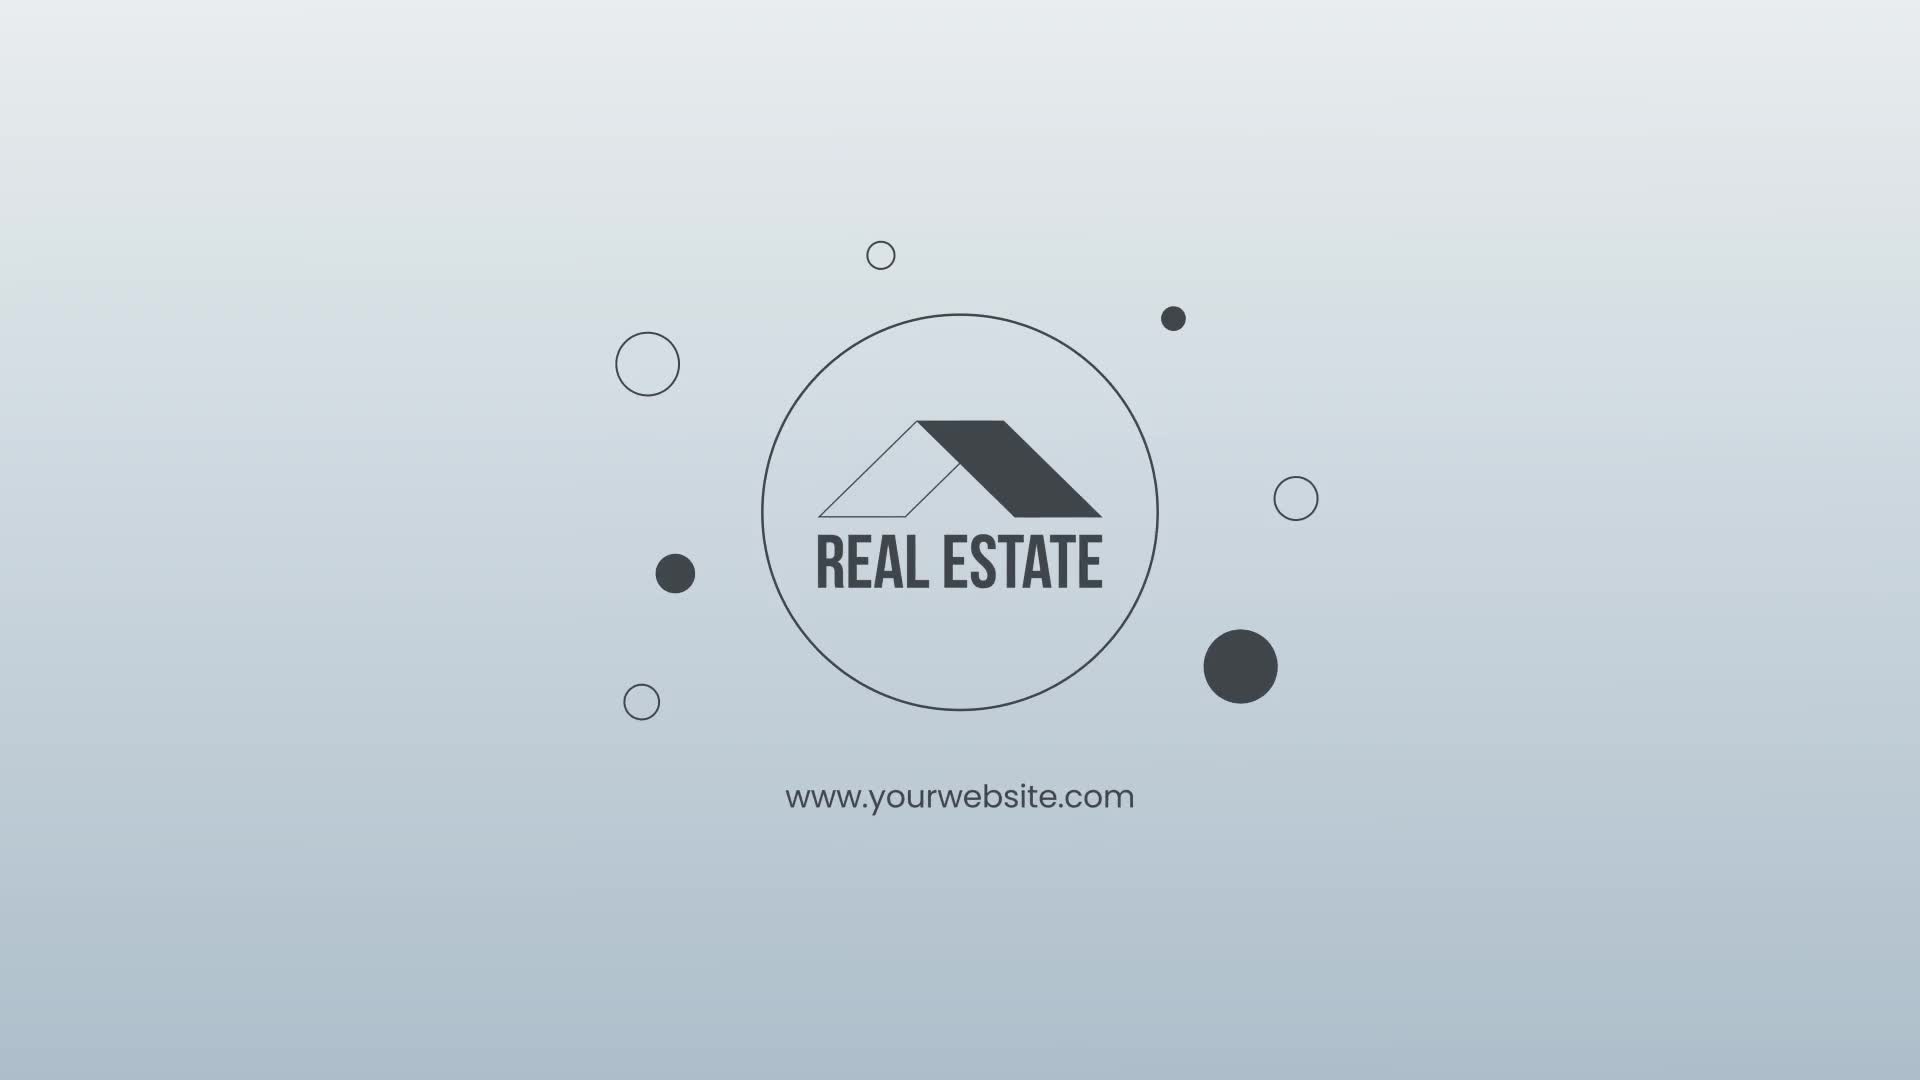 Real Estate for Premiere Pro Videohive 27444919 Premiere Pro Image 1